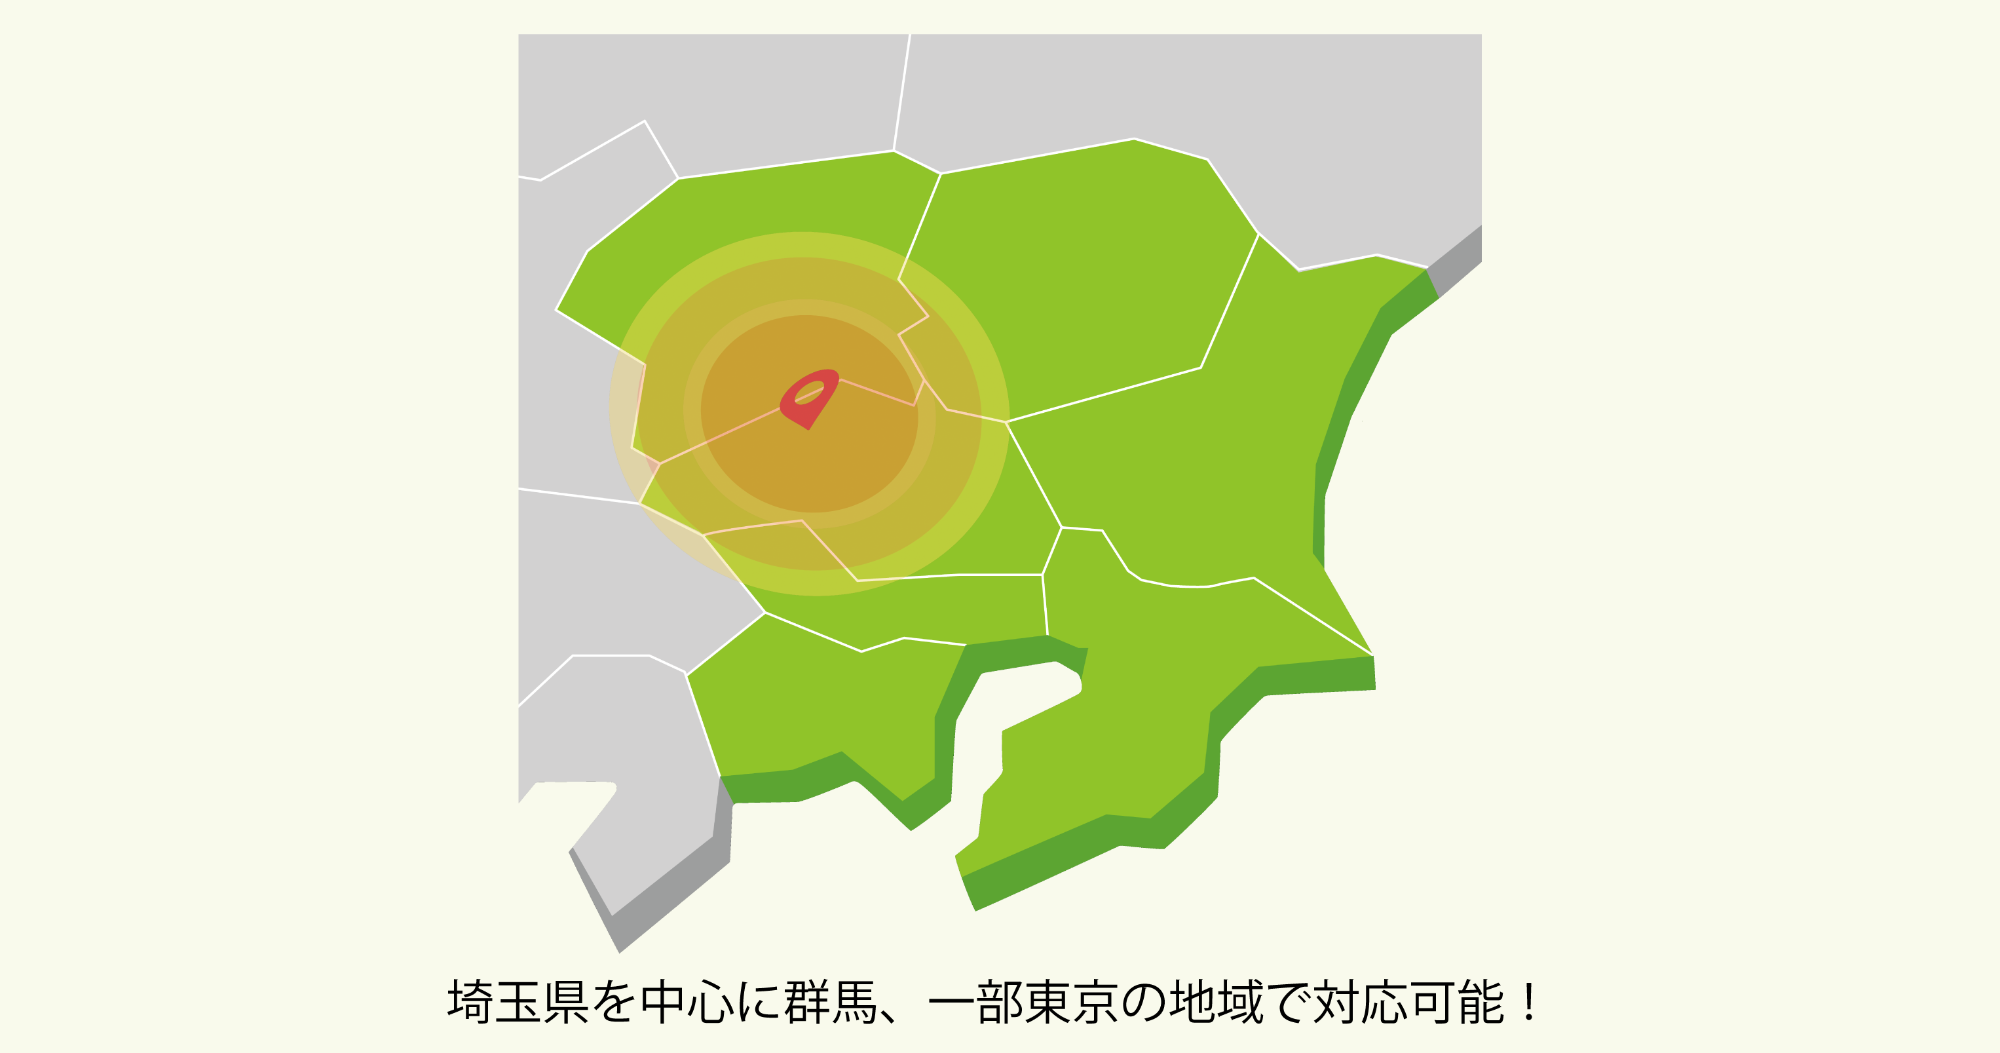  埼玉県を中心に群馬、一部東京の地域で対応可能！